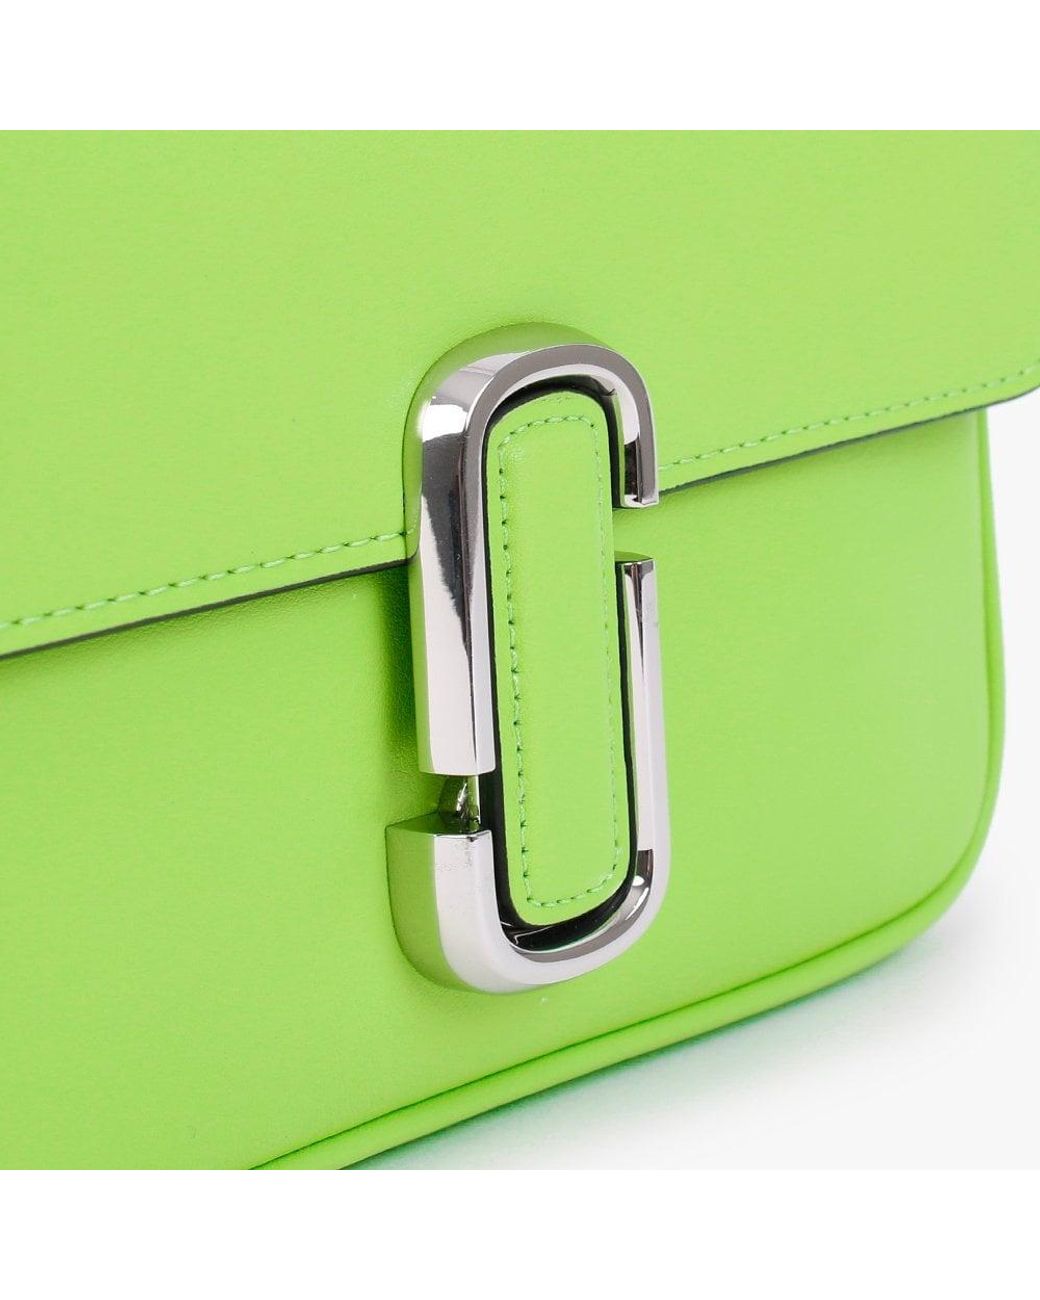 MARC JACOBS: The J leather bag - Green  Marc Jacobs shoulder bag  H956L01PF22 online at